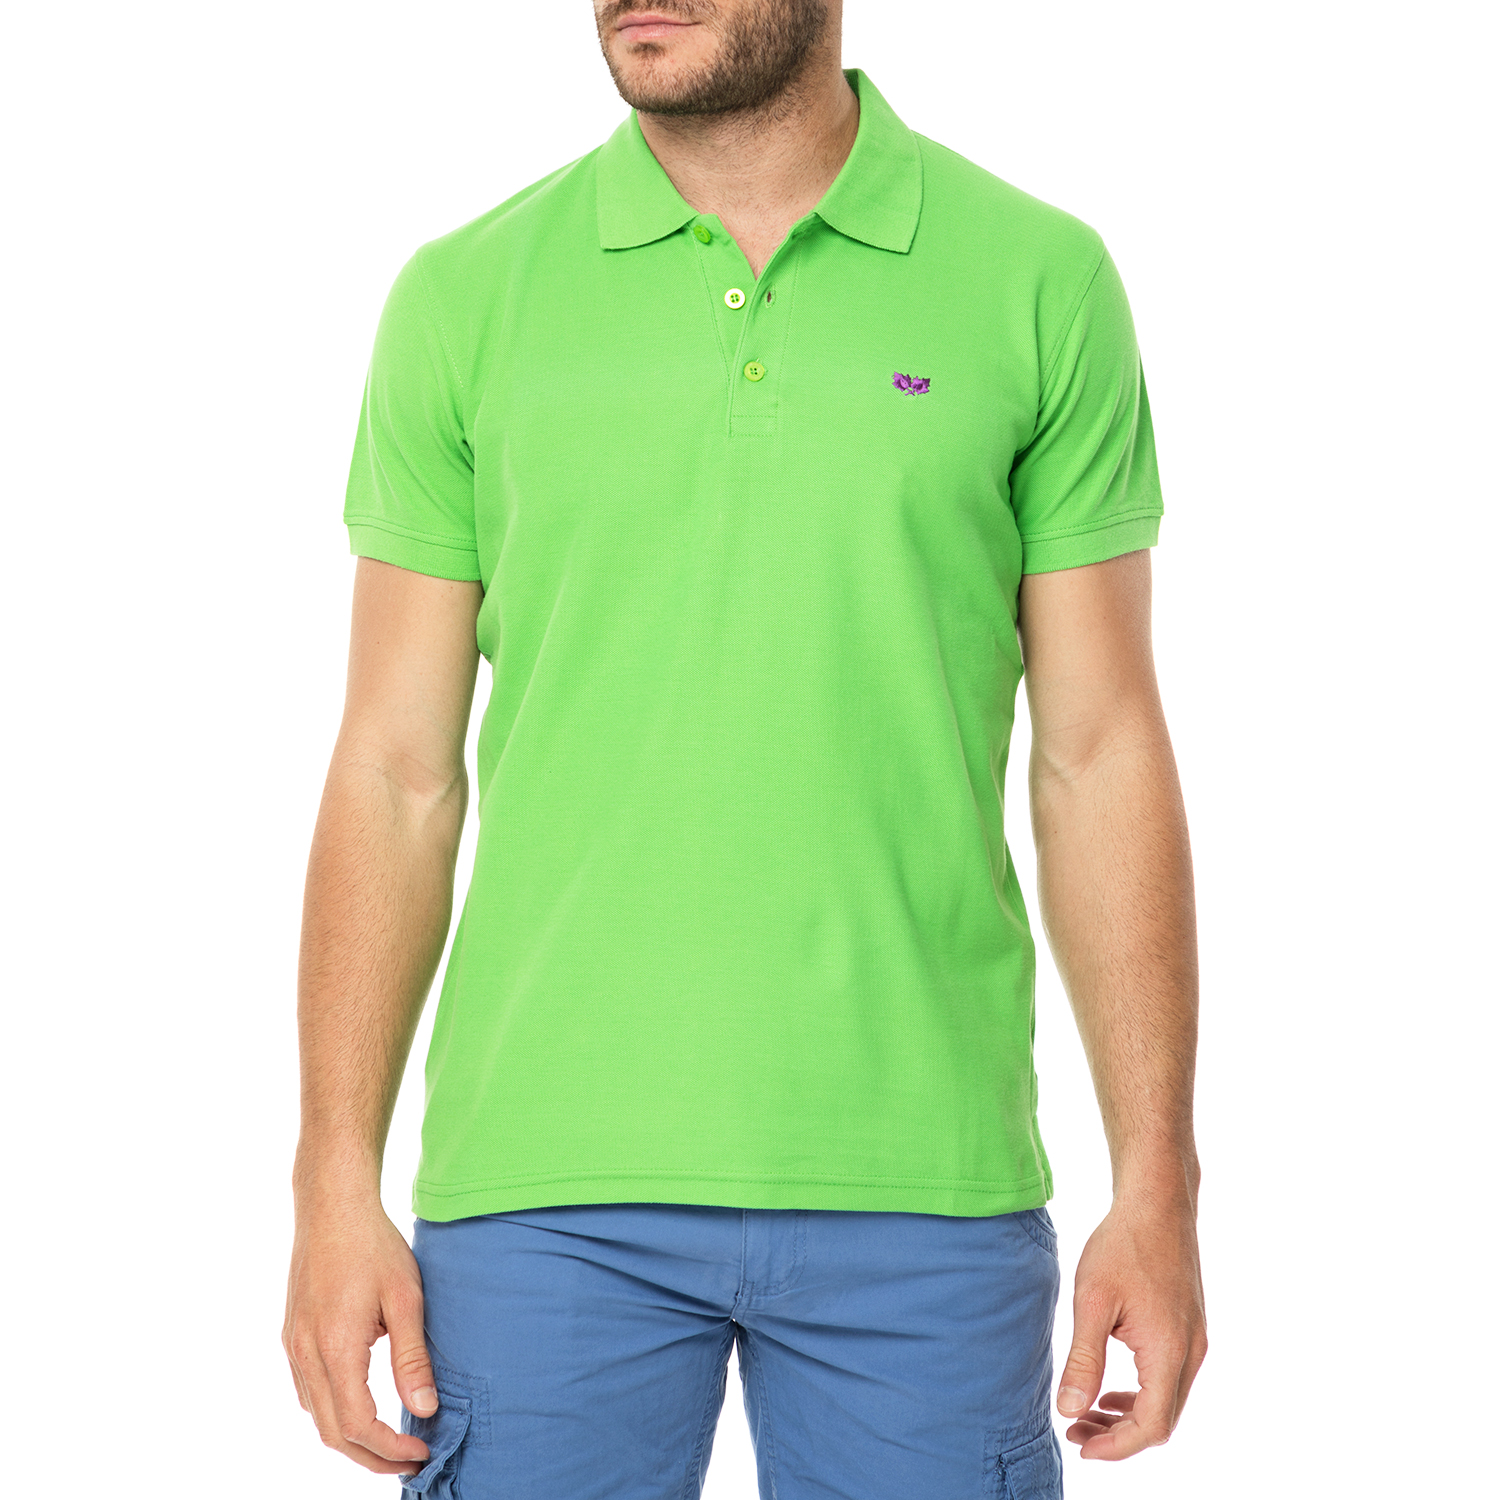 Ανδρικά/Ρούχα/Μπλούζες/Πόλο GREENWOOD - Ανδρική πόλο μπλούζα GREENWOOD ανοιχτό πράσινο